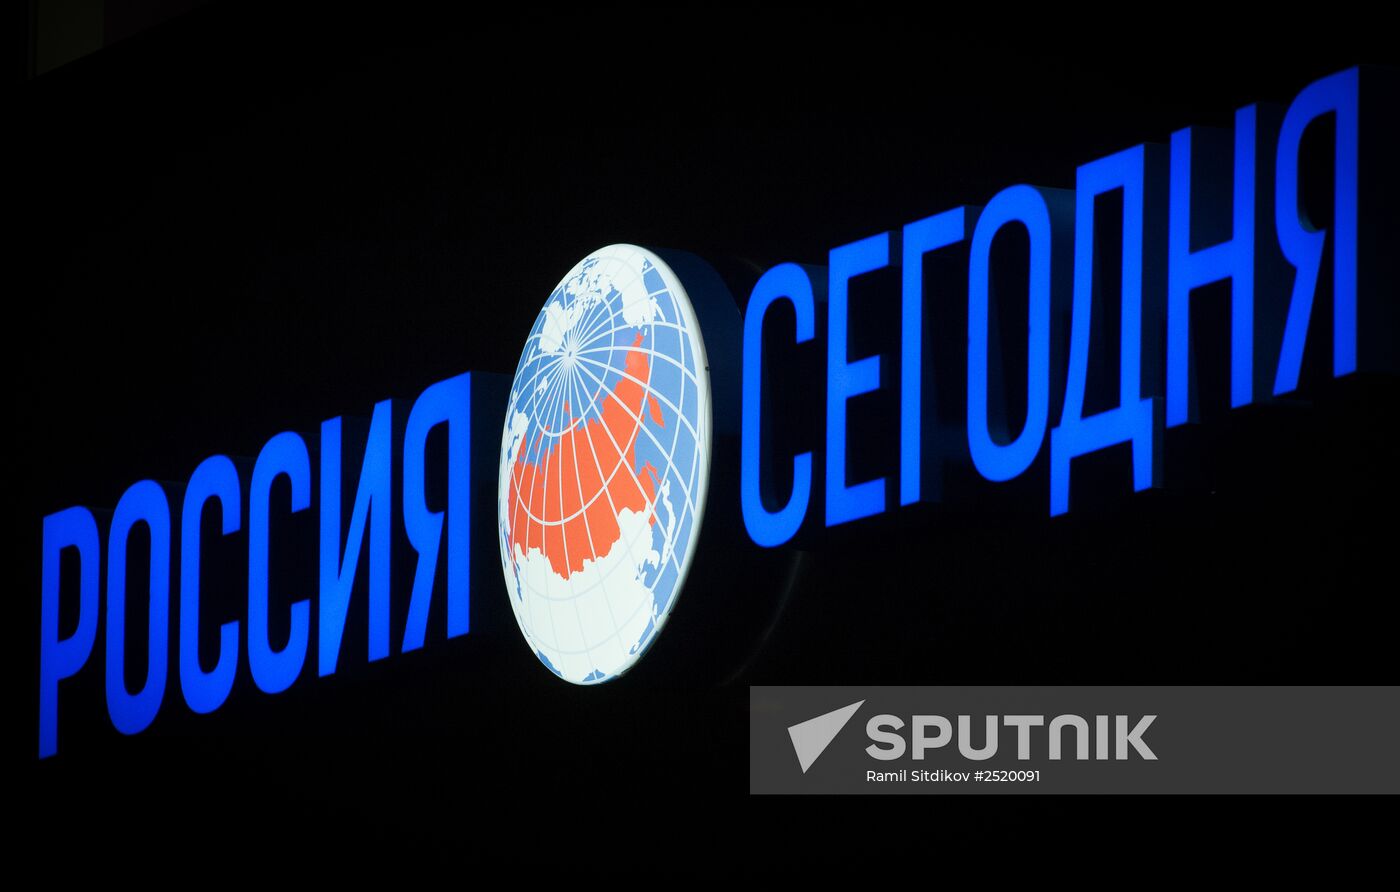 Rossiya Segodnya news agency logo